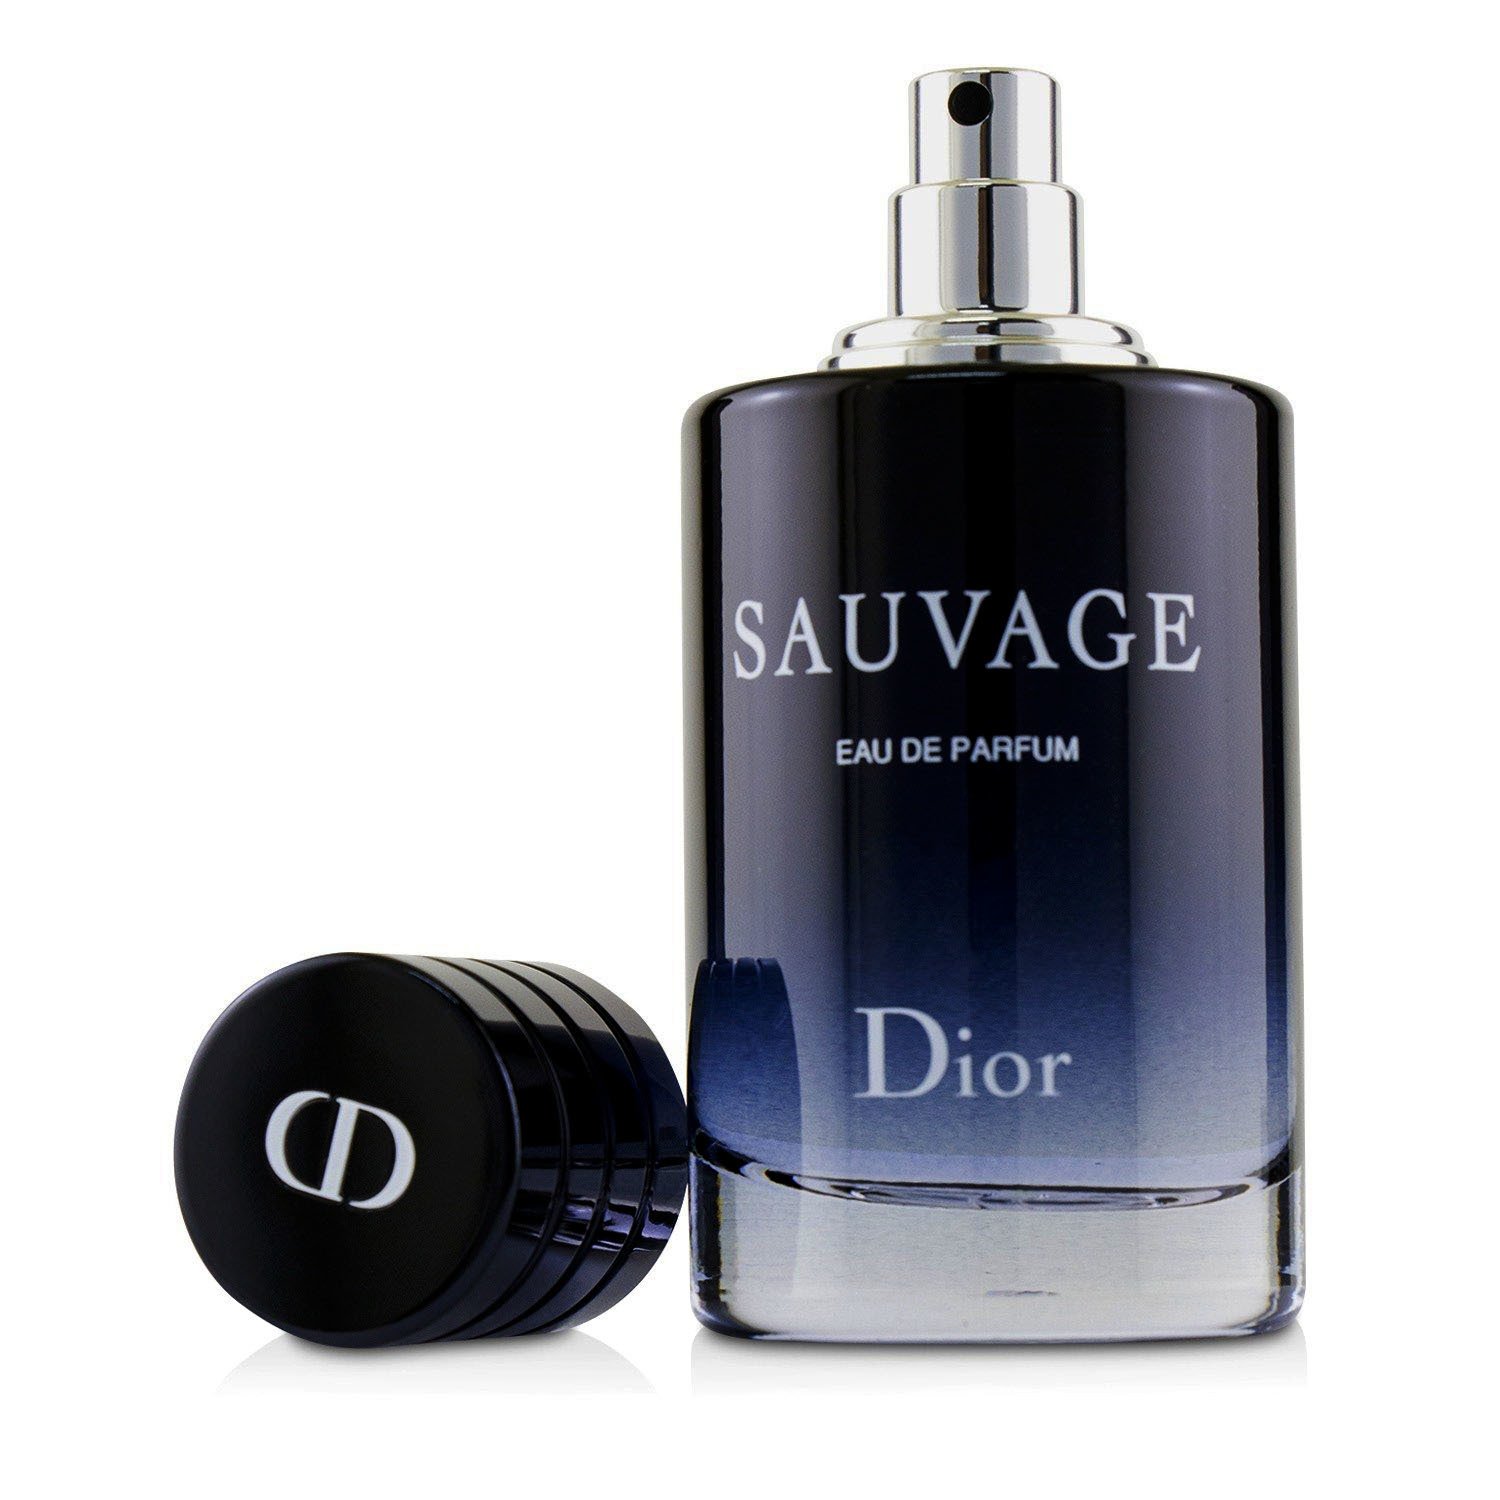 迪奧 Christian Dior - Sauvage 曠野之心淡香精